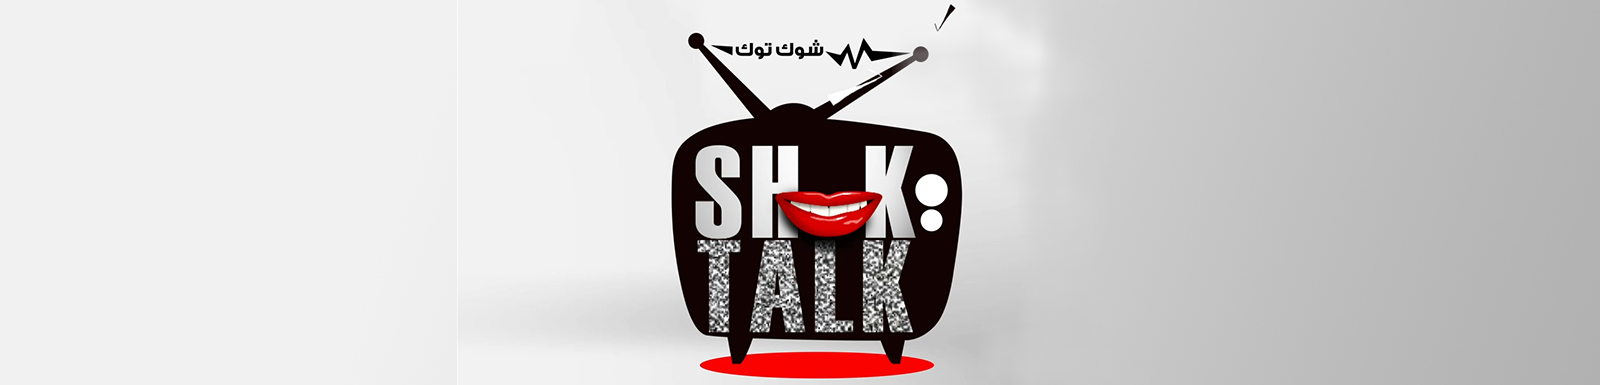 تحميل برنامج شوك توك الحلقة 15 كاملة MBC shahid شاهد نت